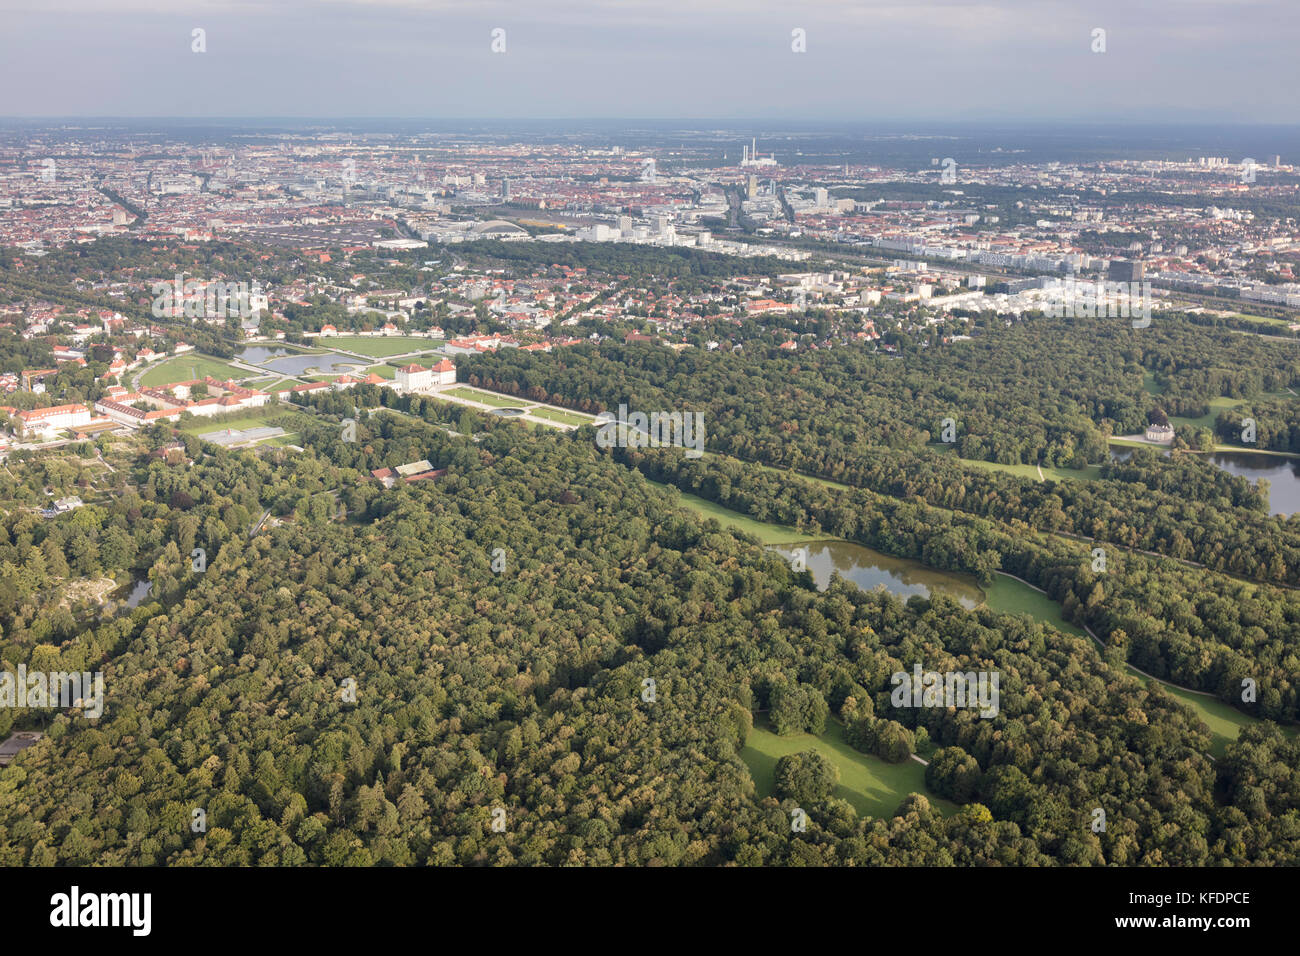 Luftaufnahme von Schloss Nymphenburg (Schloss Nymphenburg), München, Bayern, Deutschland Stockfoto